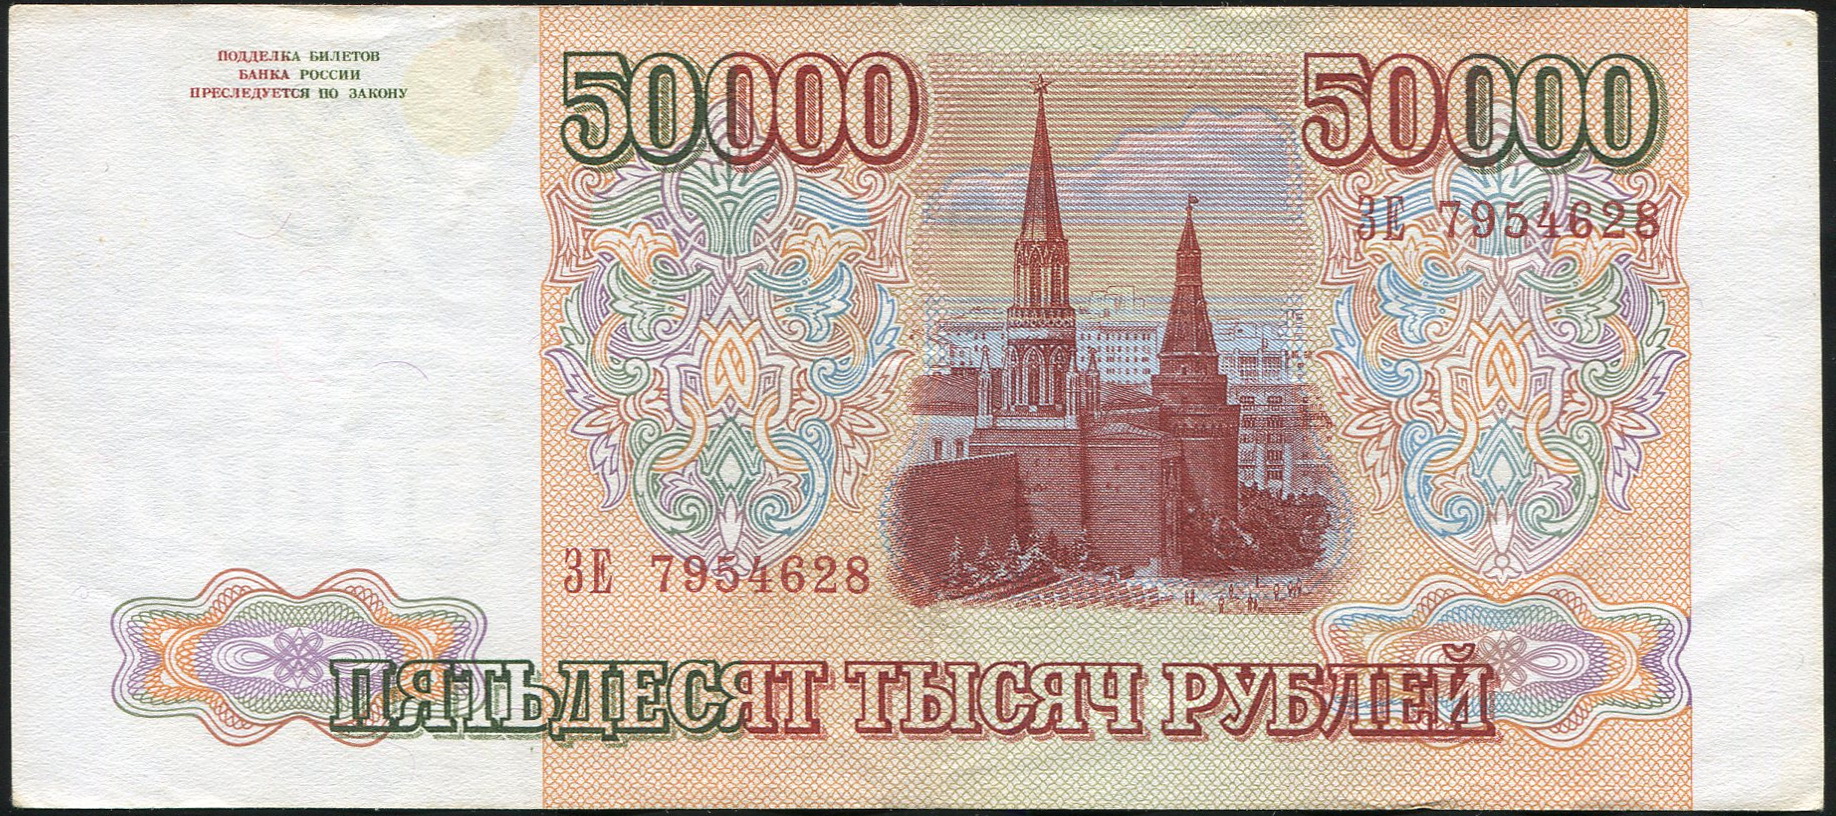 50000 рублей каждому. Банкнота 50000 рублей 1993. Купюра 50000 рублей. 50000 Рублей 1993 года. Банкнота 50000 рублей 1993 года.